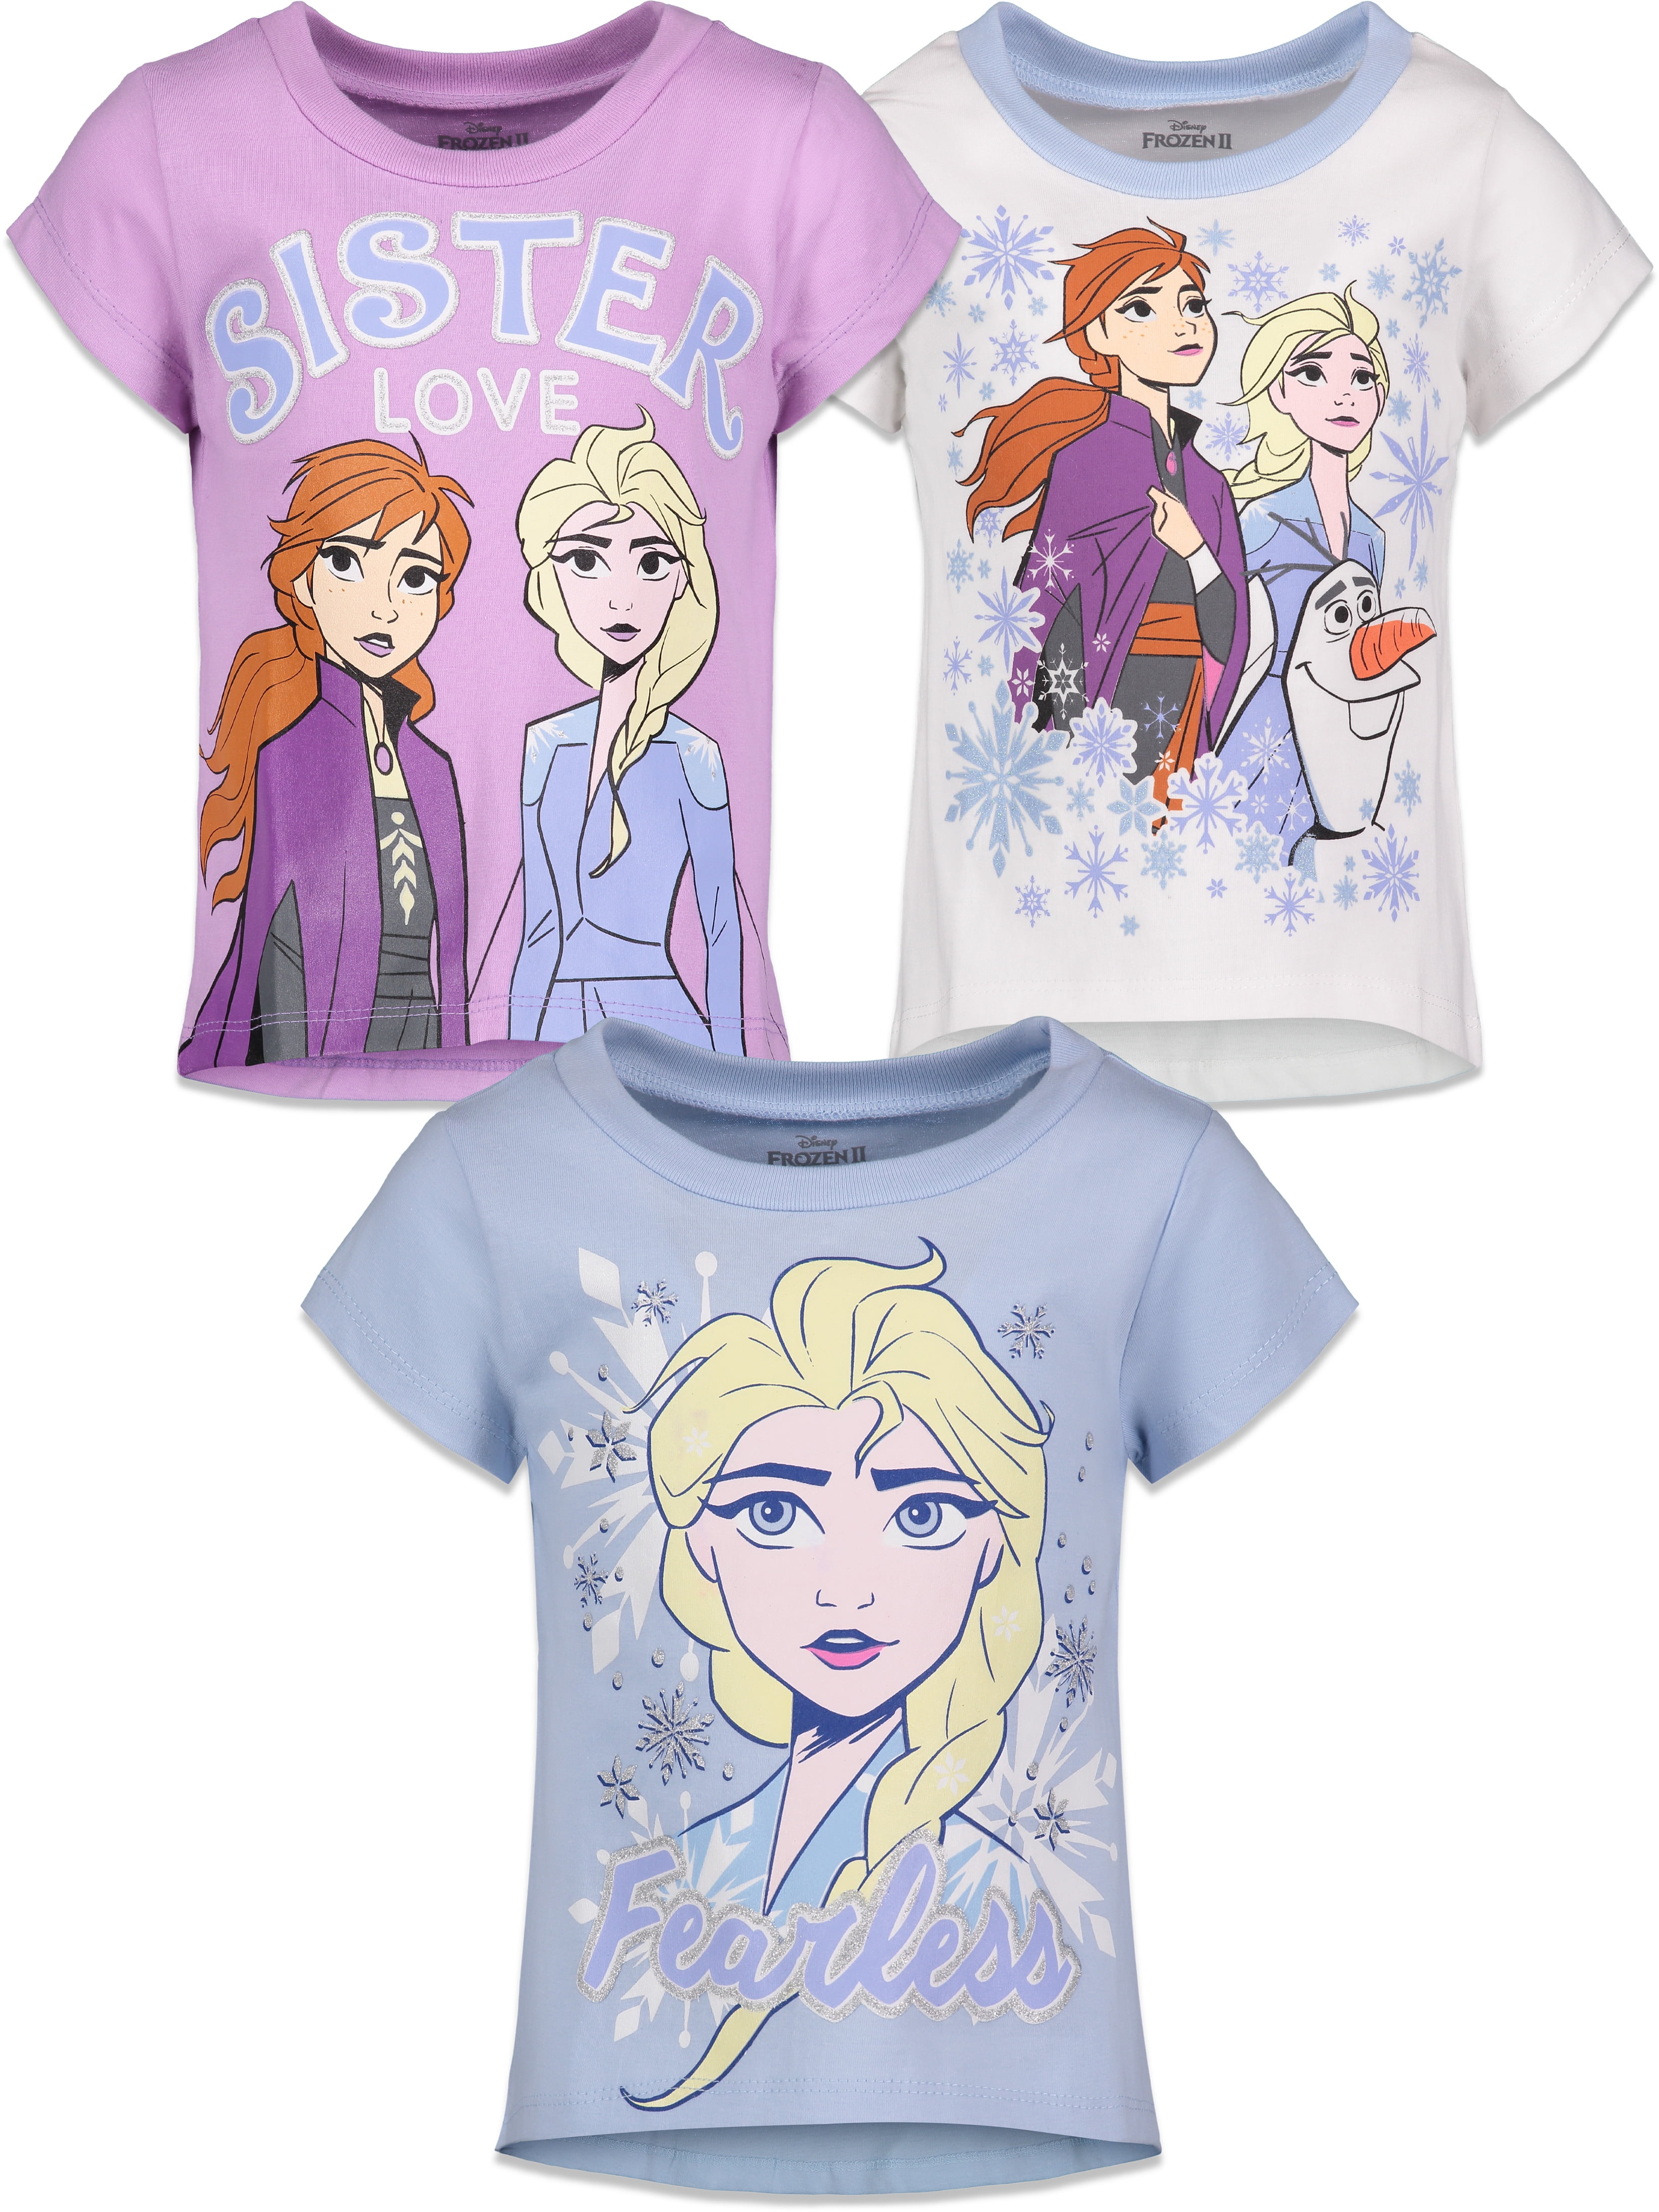 BNWT top Disney Frozen Queen Elsa Anna Tshirt cotton Long Sleeves girls t-shirt 